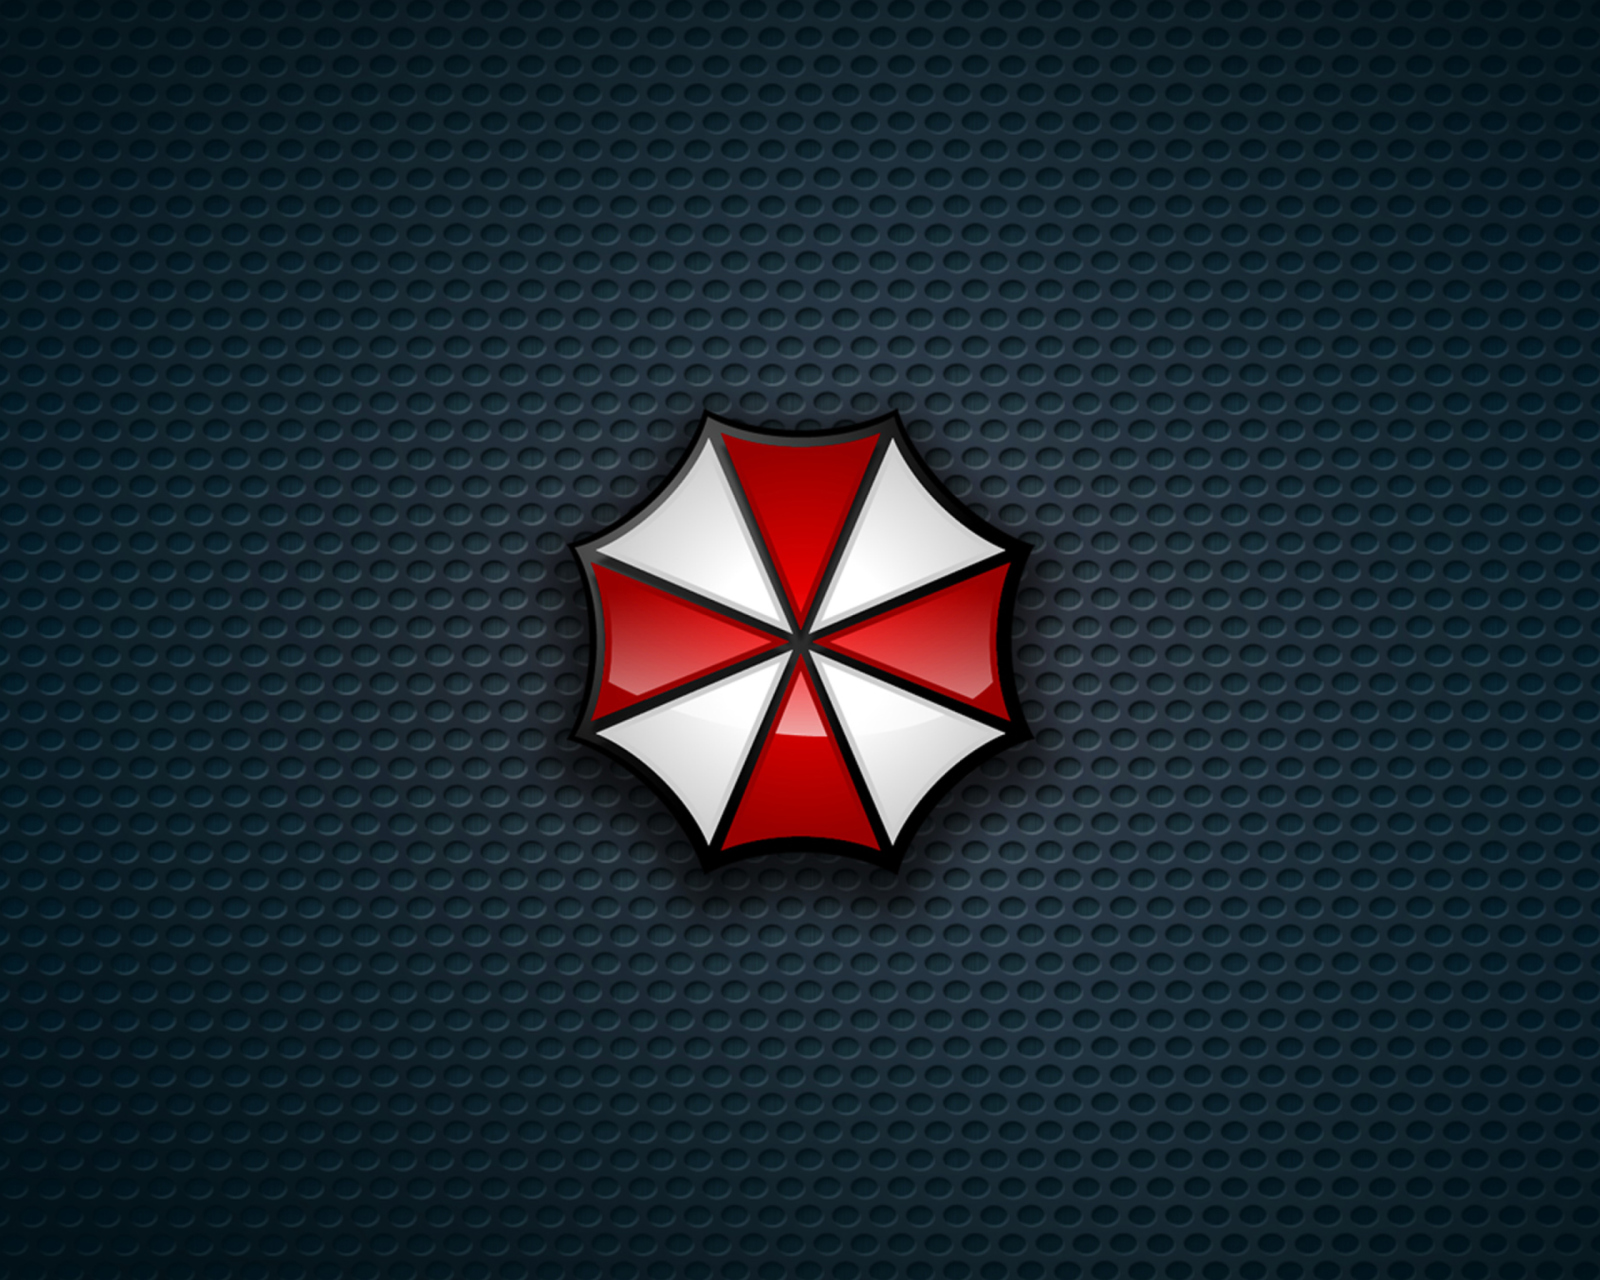 Umbrella Corporation screenshot #1 1600x1280